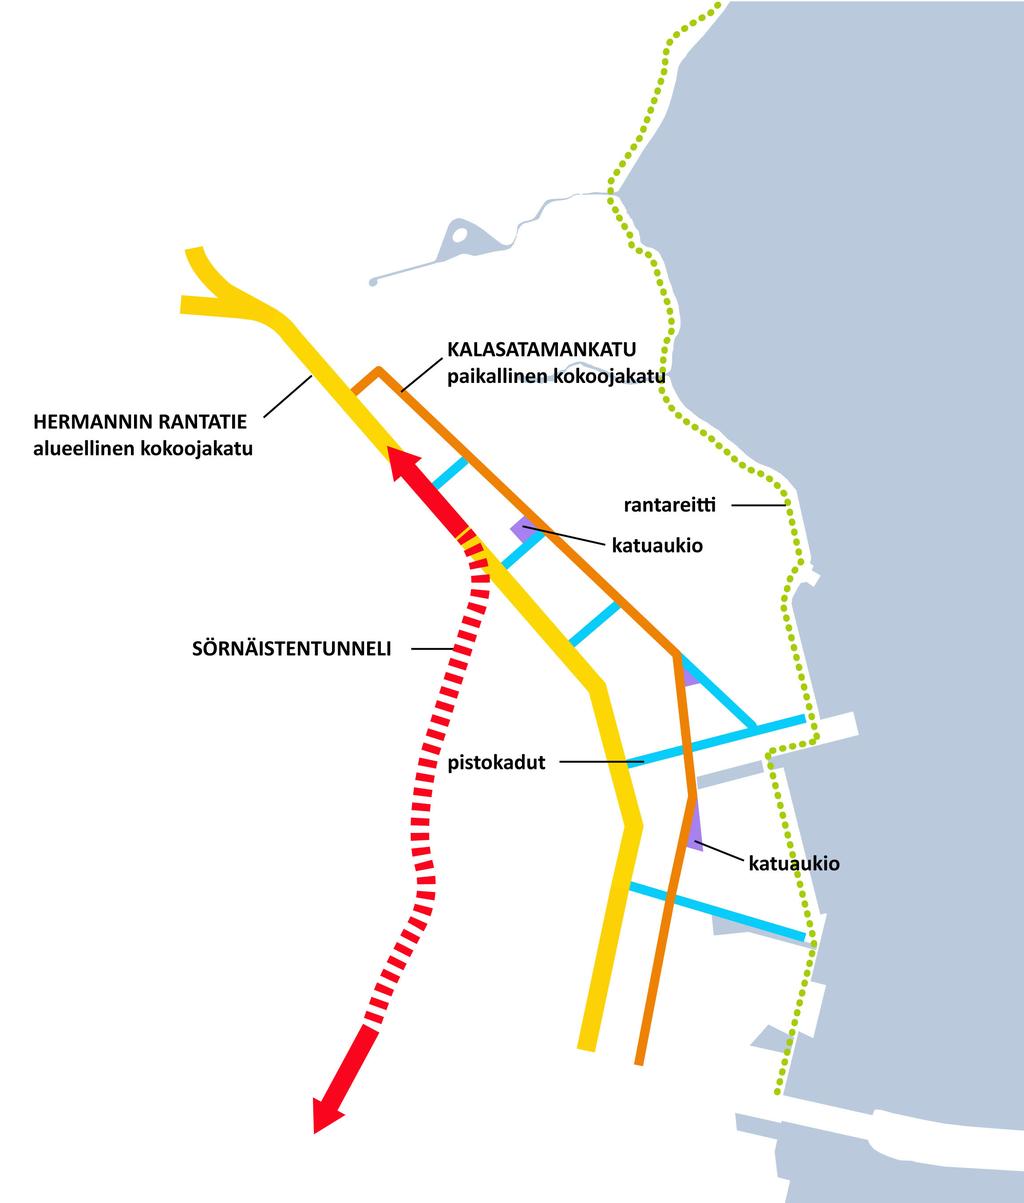 2. Hermannin rantatien muuttaminen luonteeltaan alueelliseksi kokoojakaduksi Hermannin rantatien liikennemäärä vähenee merkittävästi, vaikka se säilyy pääkatuverkon osana.